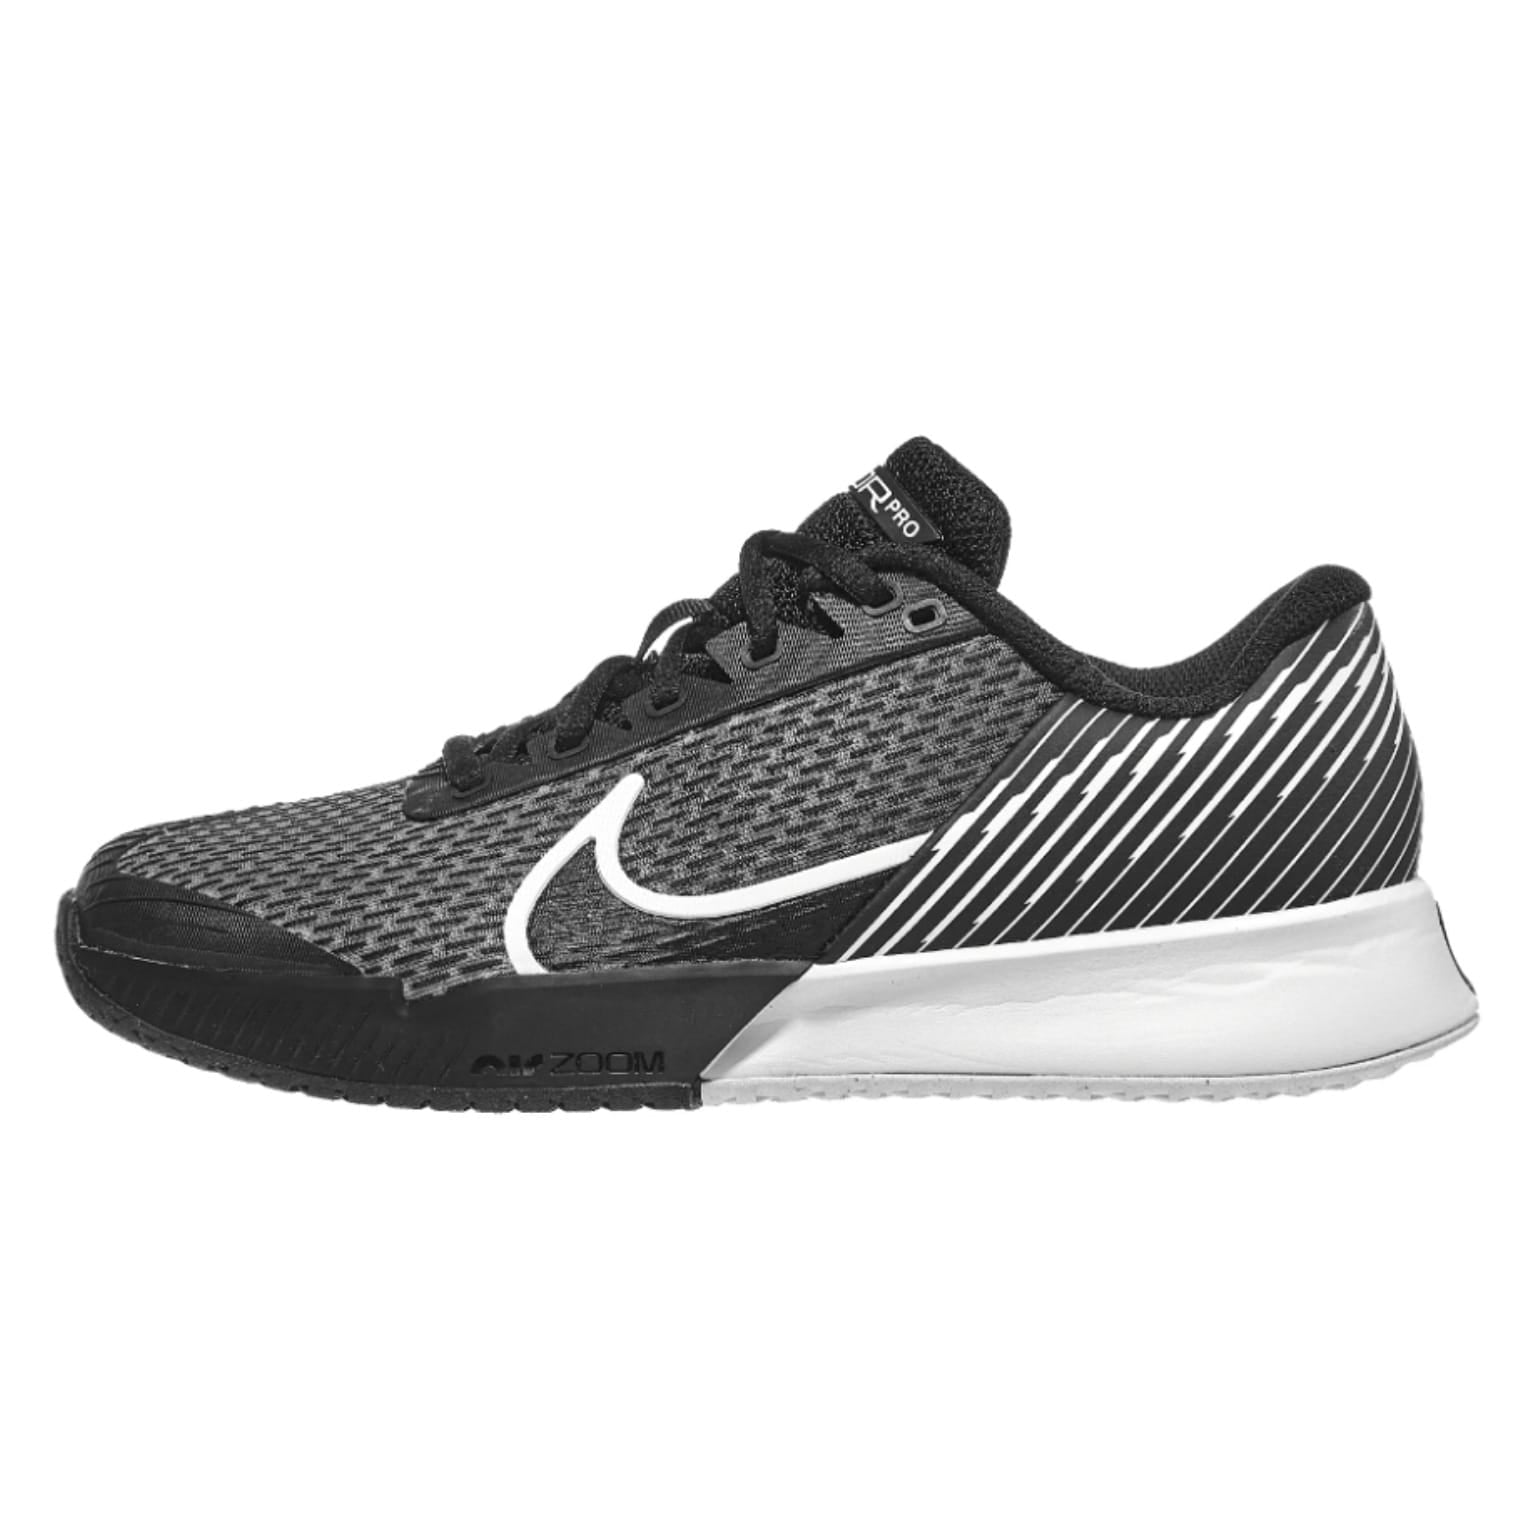 Tenis Nike Vapor Pro 2 (Black/White)